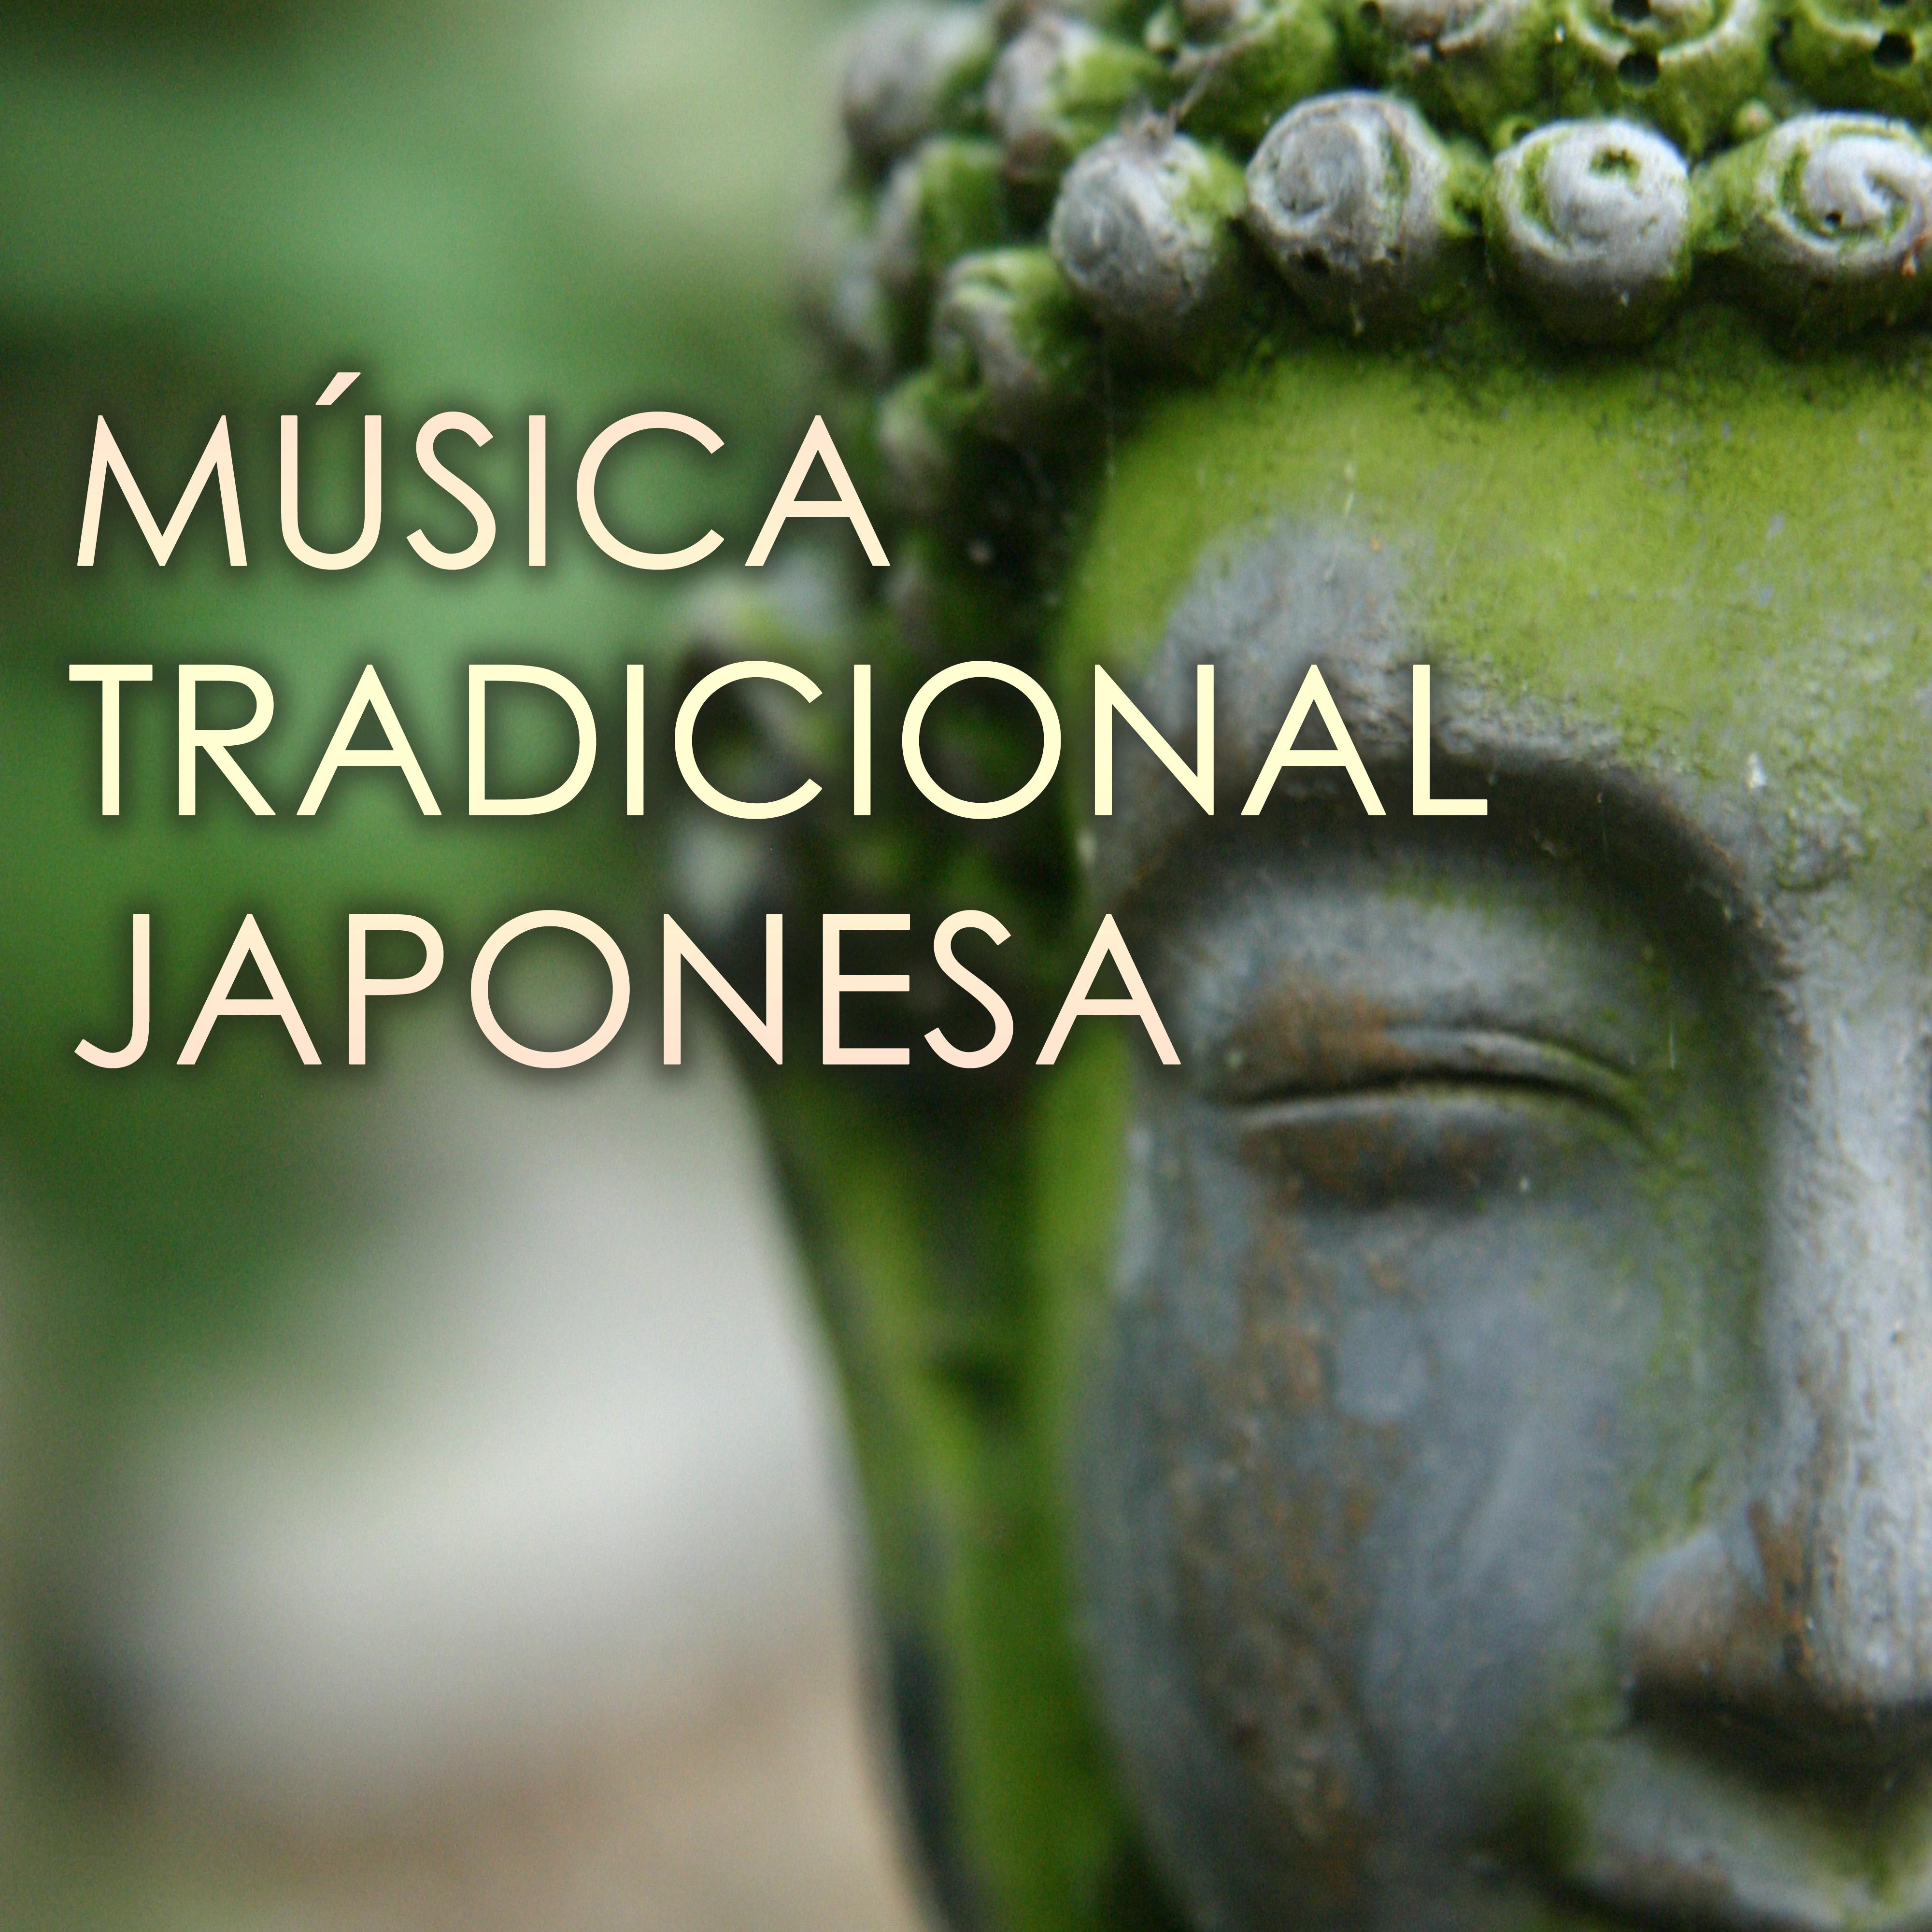 Música Tradicional Japonesa - Canciones Zen Asiaticas con Sonidos de la Naturaleza